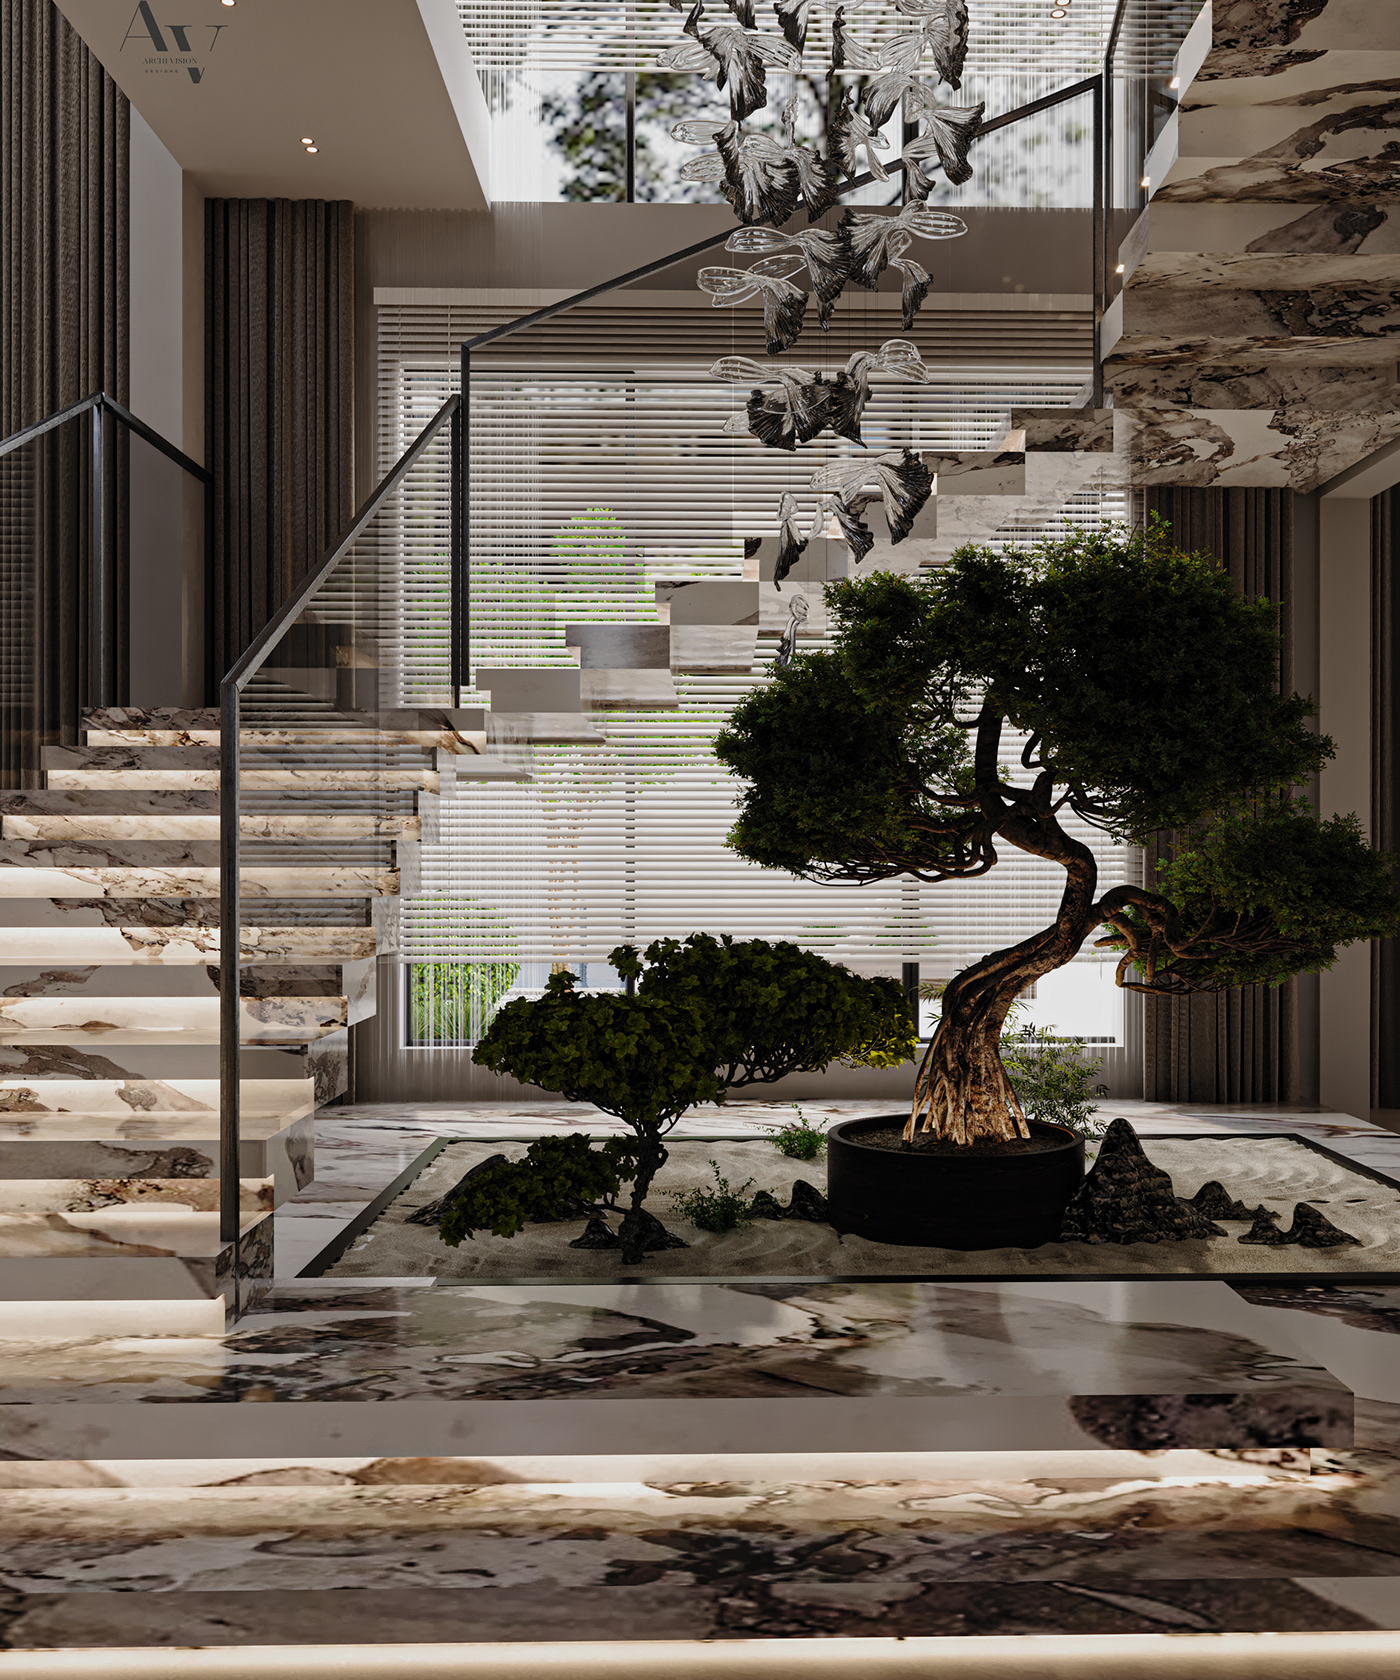 indoor architecture Render visualization interior design  corona modern 3ds max archviz exterior